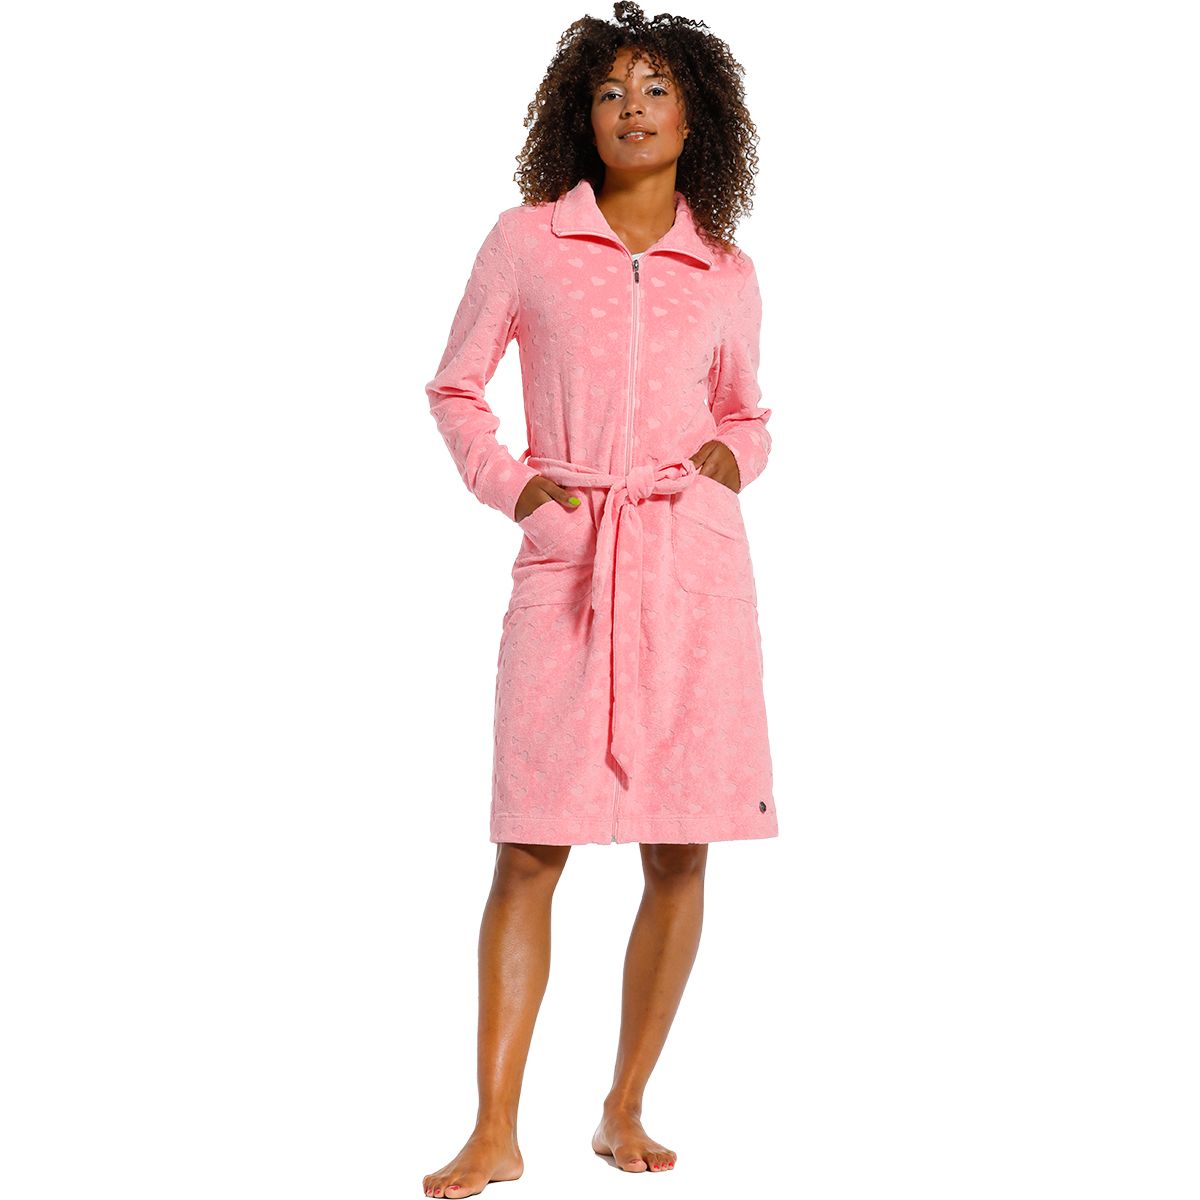 Embryo krullen pen Roze dames badjas rits | Gratis verzending | Gratis retour | Snel in huis |  Online de mooiste pyjama's, nachthemden, ondermode en meer